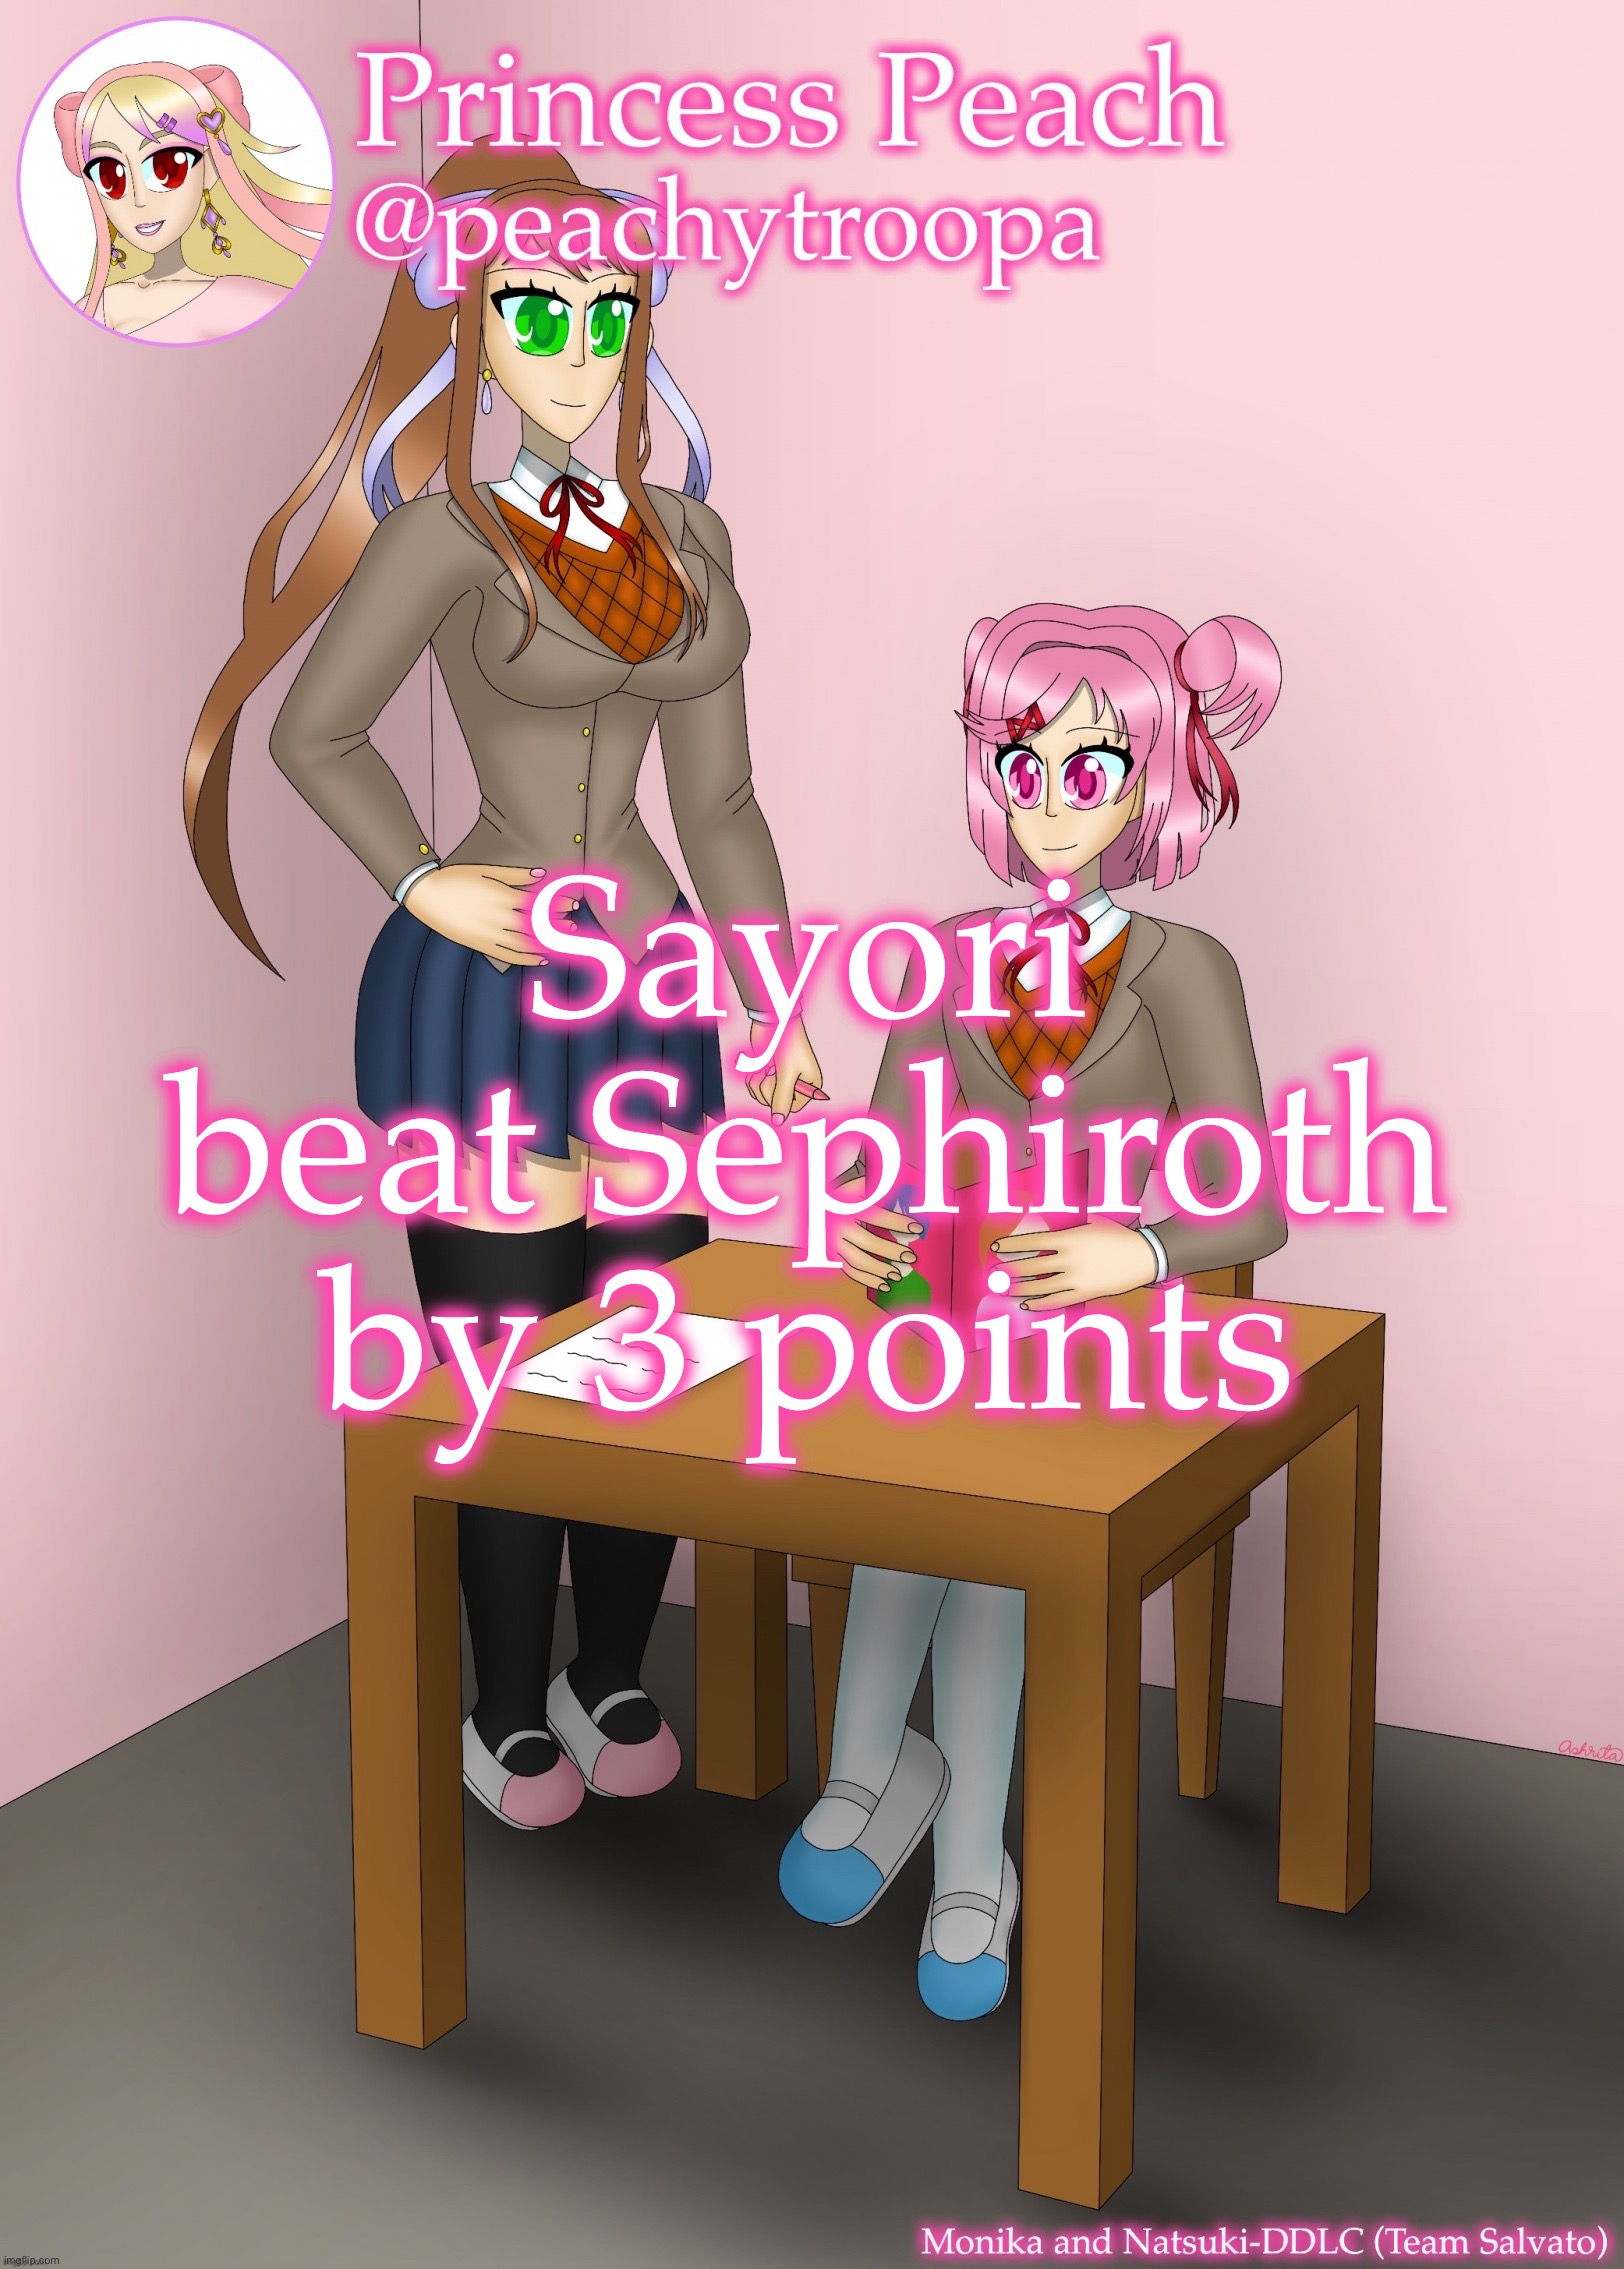 Sayori and Sephiroth - Imgflip